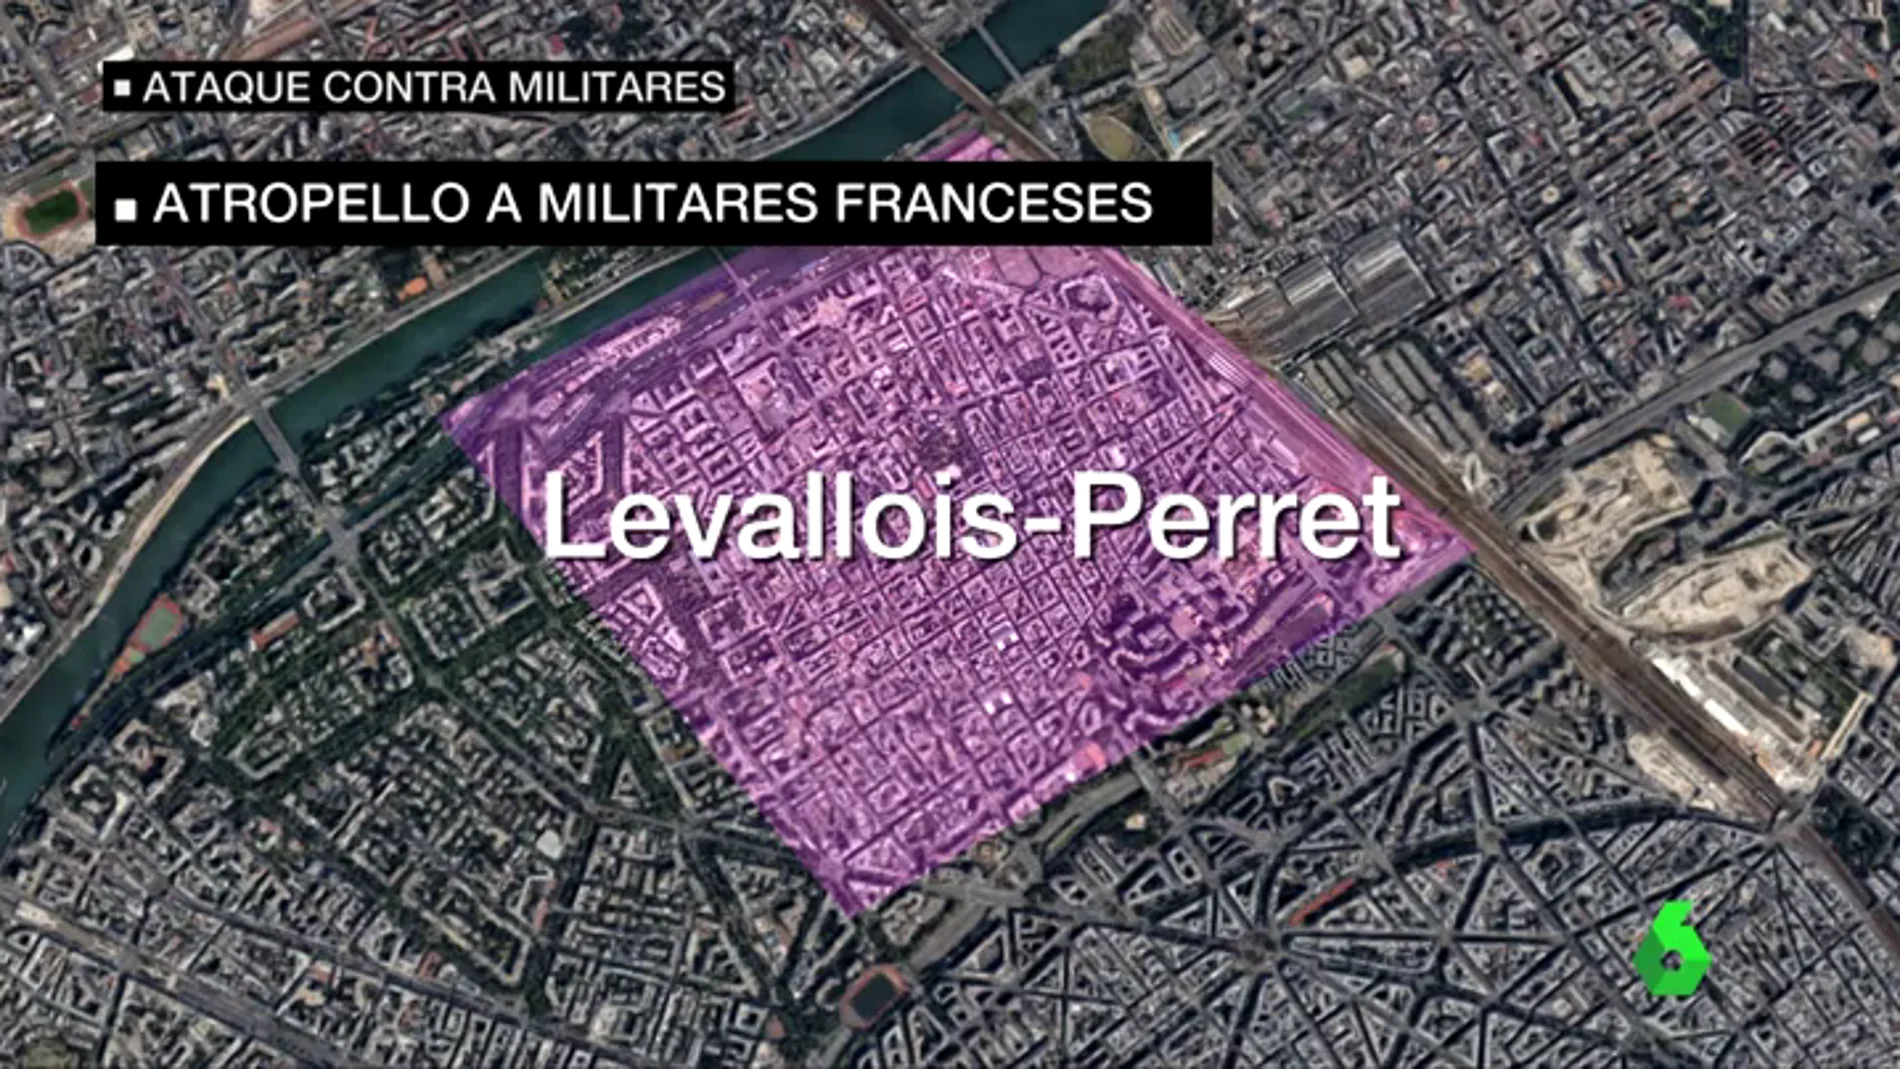 Cronología del ataque al dispositivo antiterrorista francés en París: "A cinco metros aceleró para atropellarles"